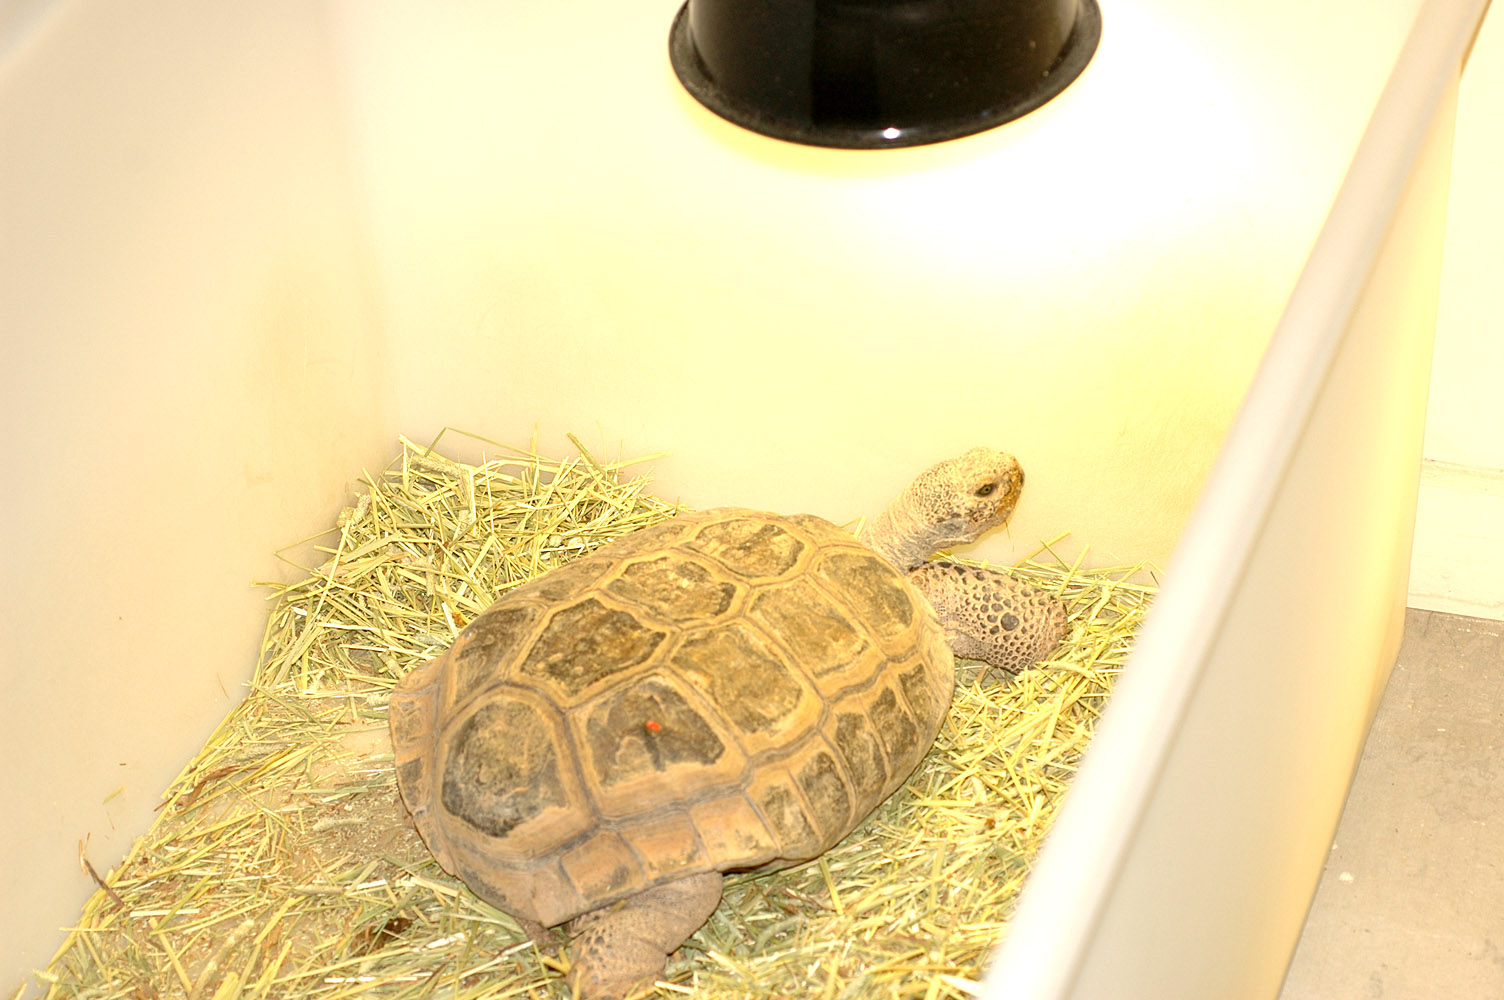 Come aiutare una tartaruga che si sveglia in anticipo dal letargo